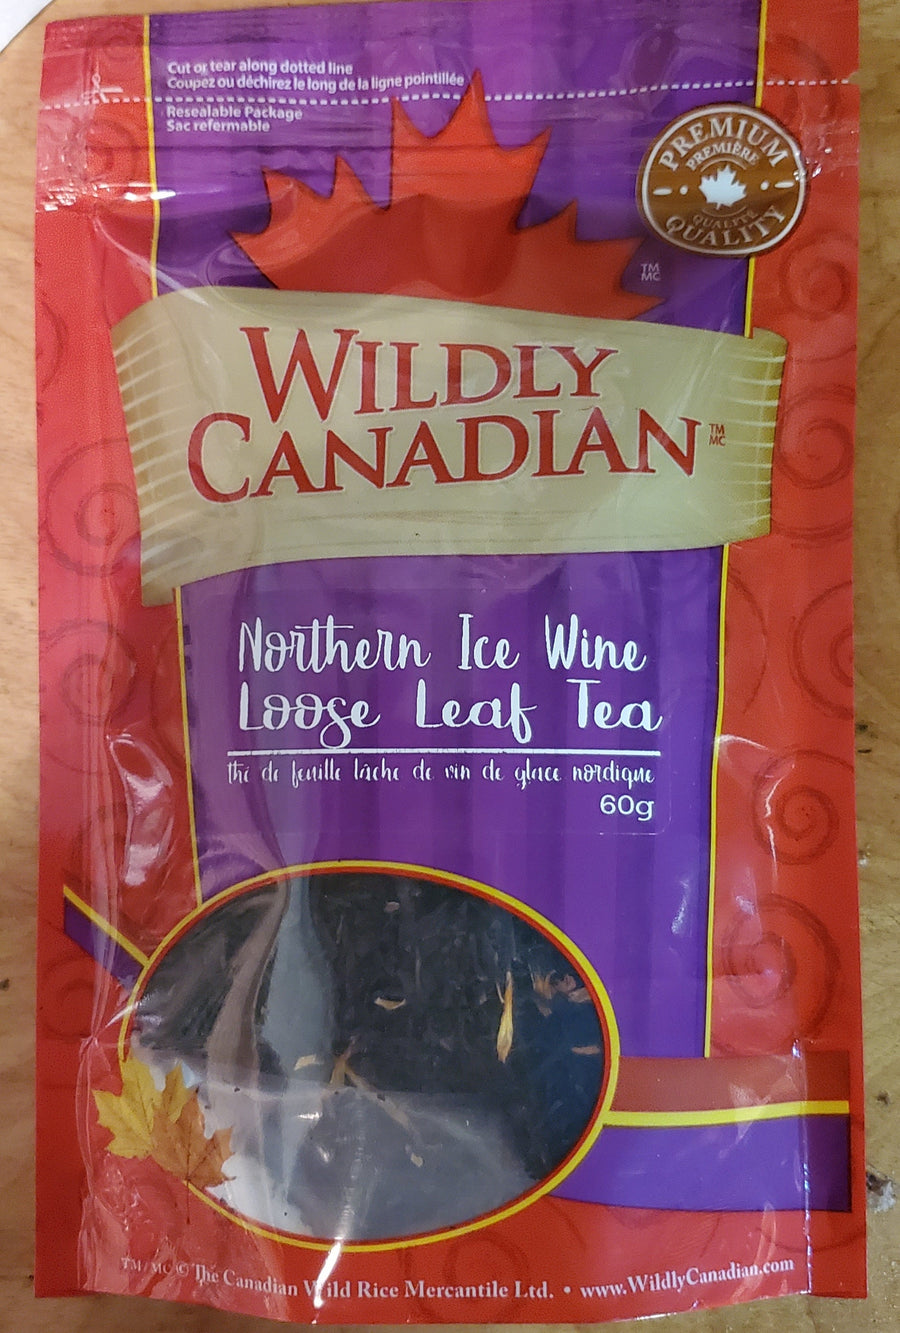 Northern Ice Wine Loose Leaf Tea